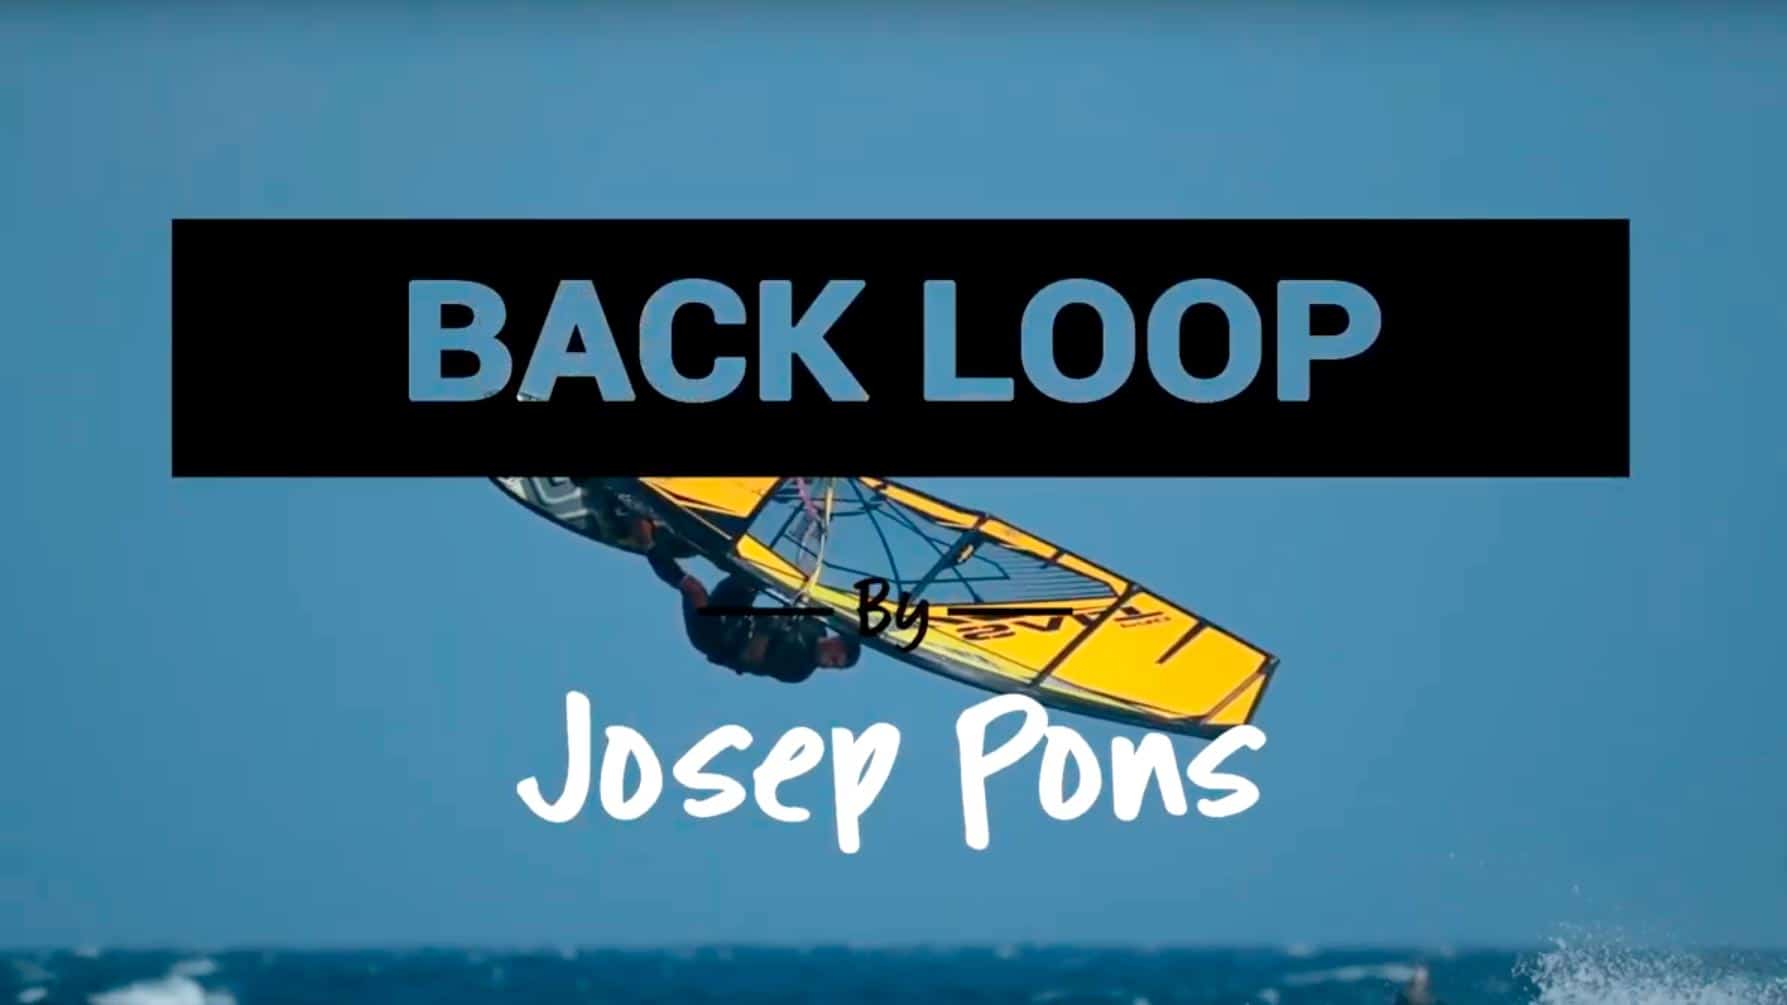 Back loop by Josep Pons